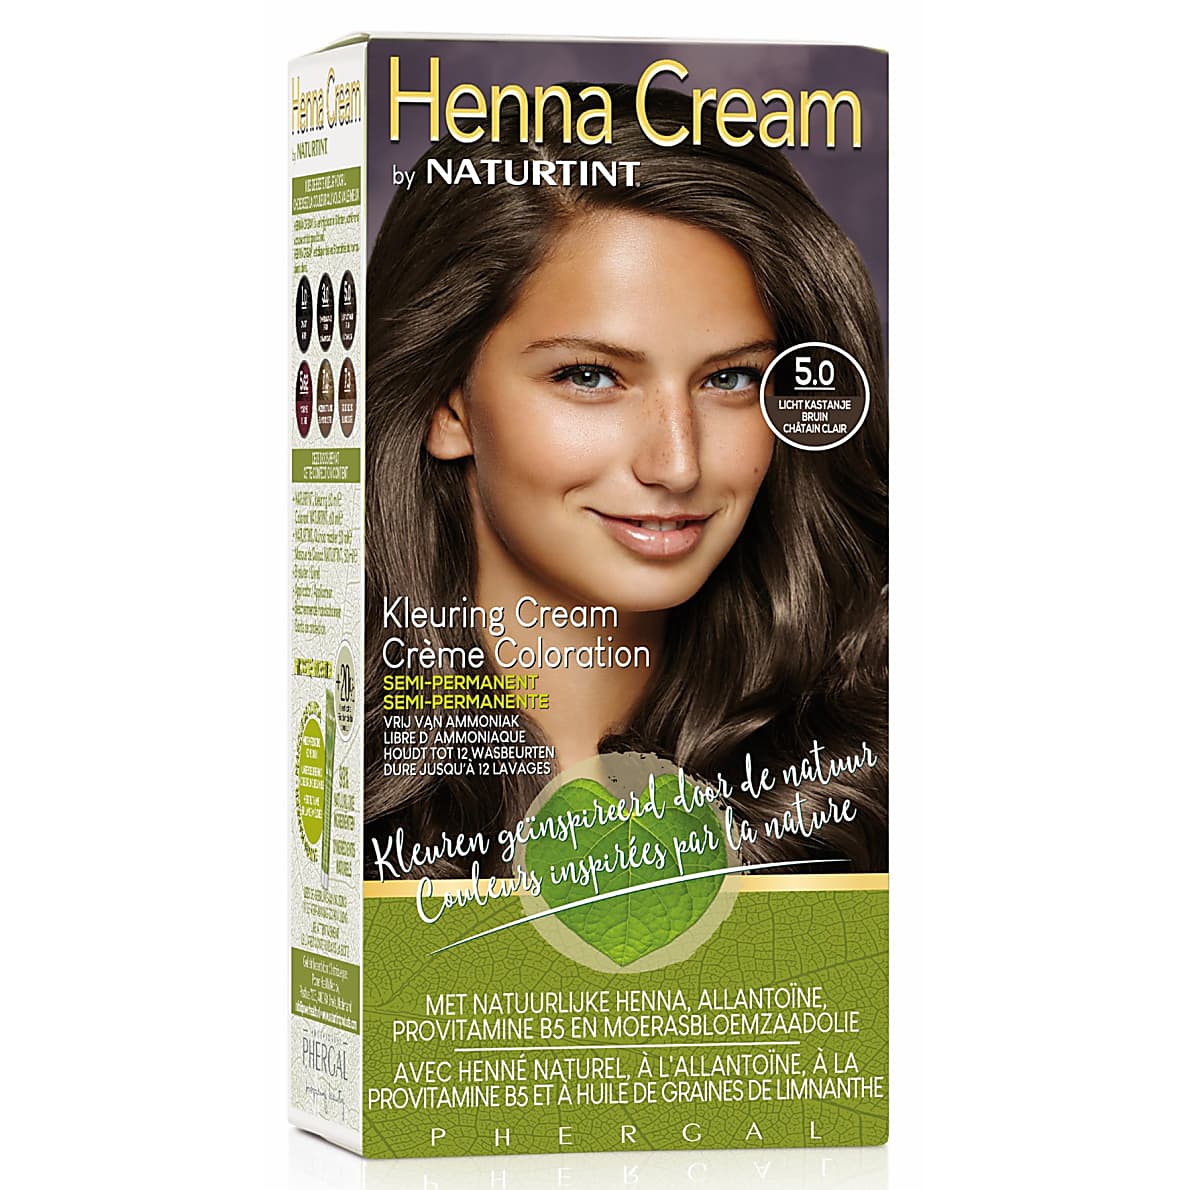 Ik heb een Engelse les Stuwkracht Onaangenaam Naturtint Henna Cream 5.0 Licht Kastanje Bruin | BigGreenSmile